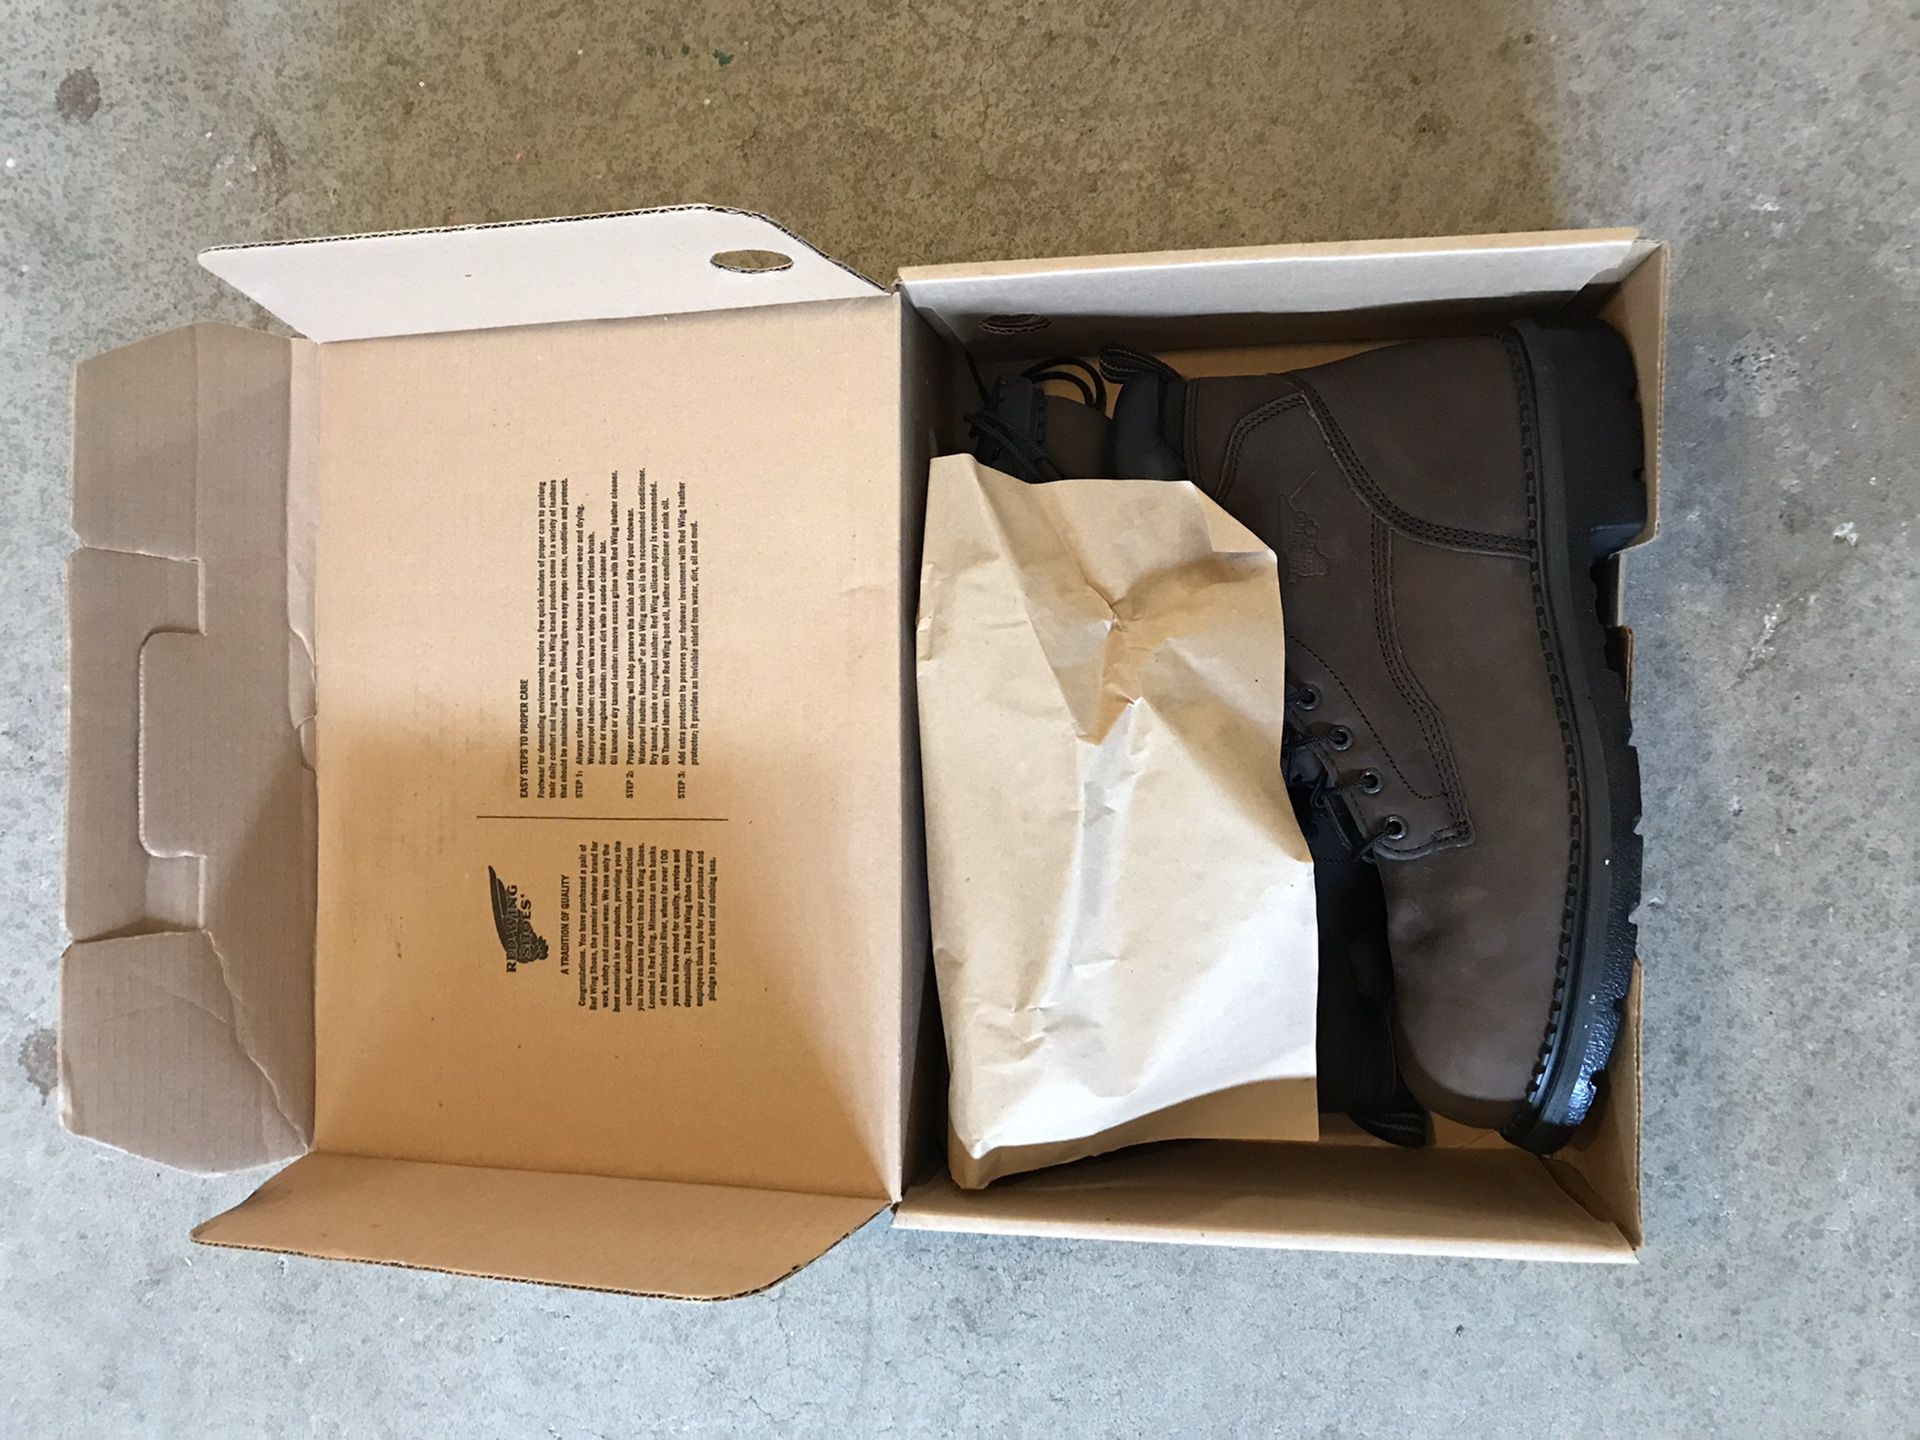 New Redwings Waterproof Work boots sz 13